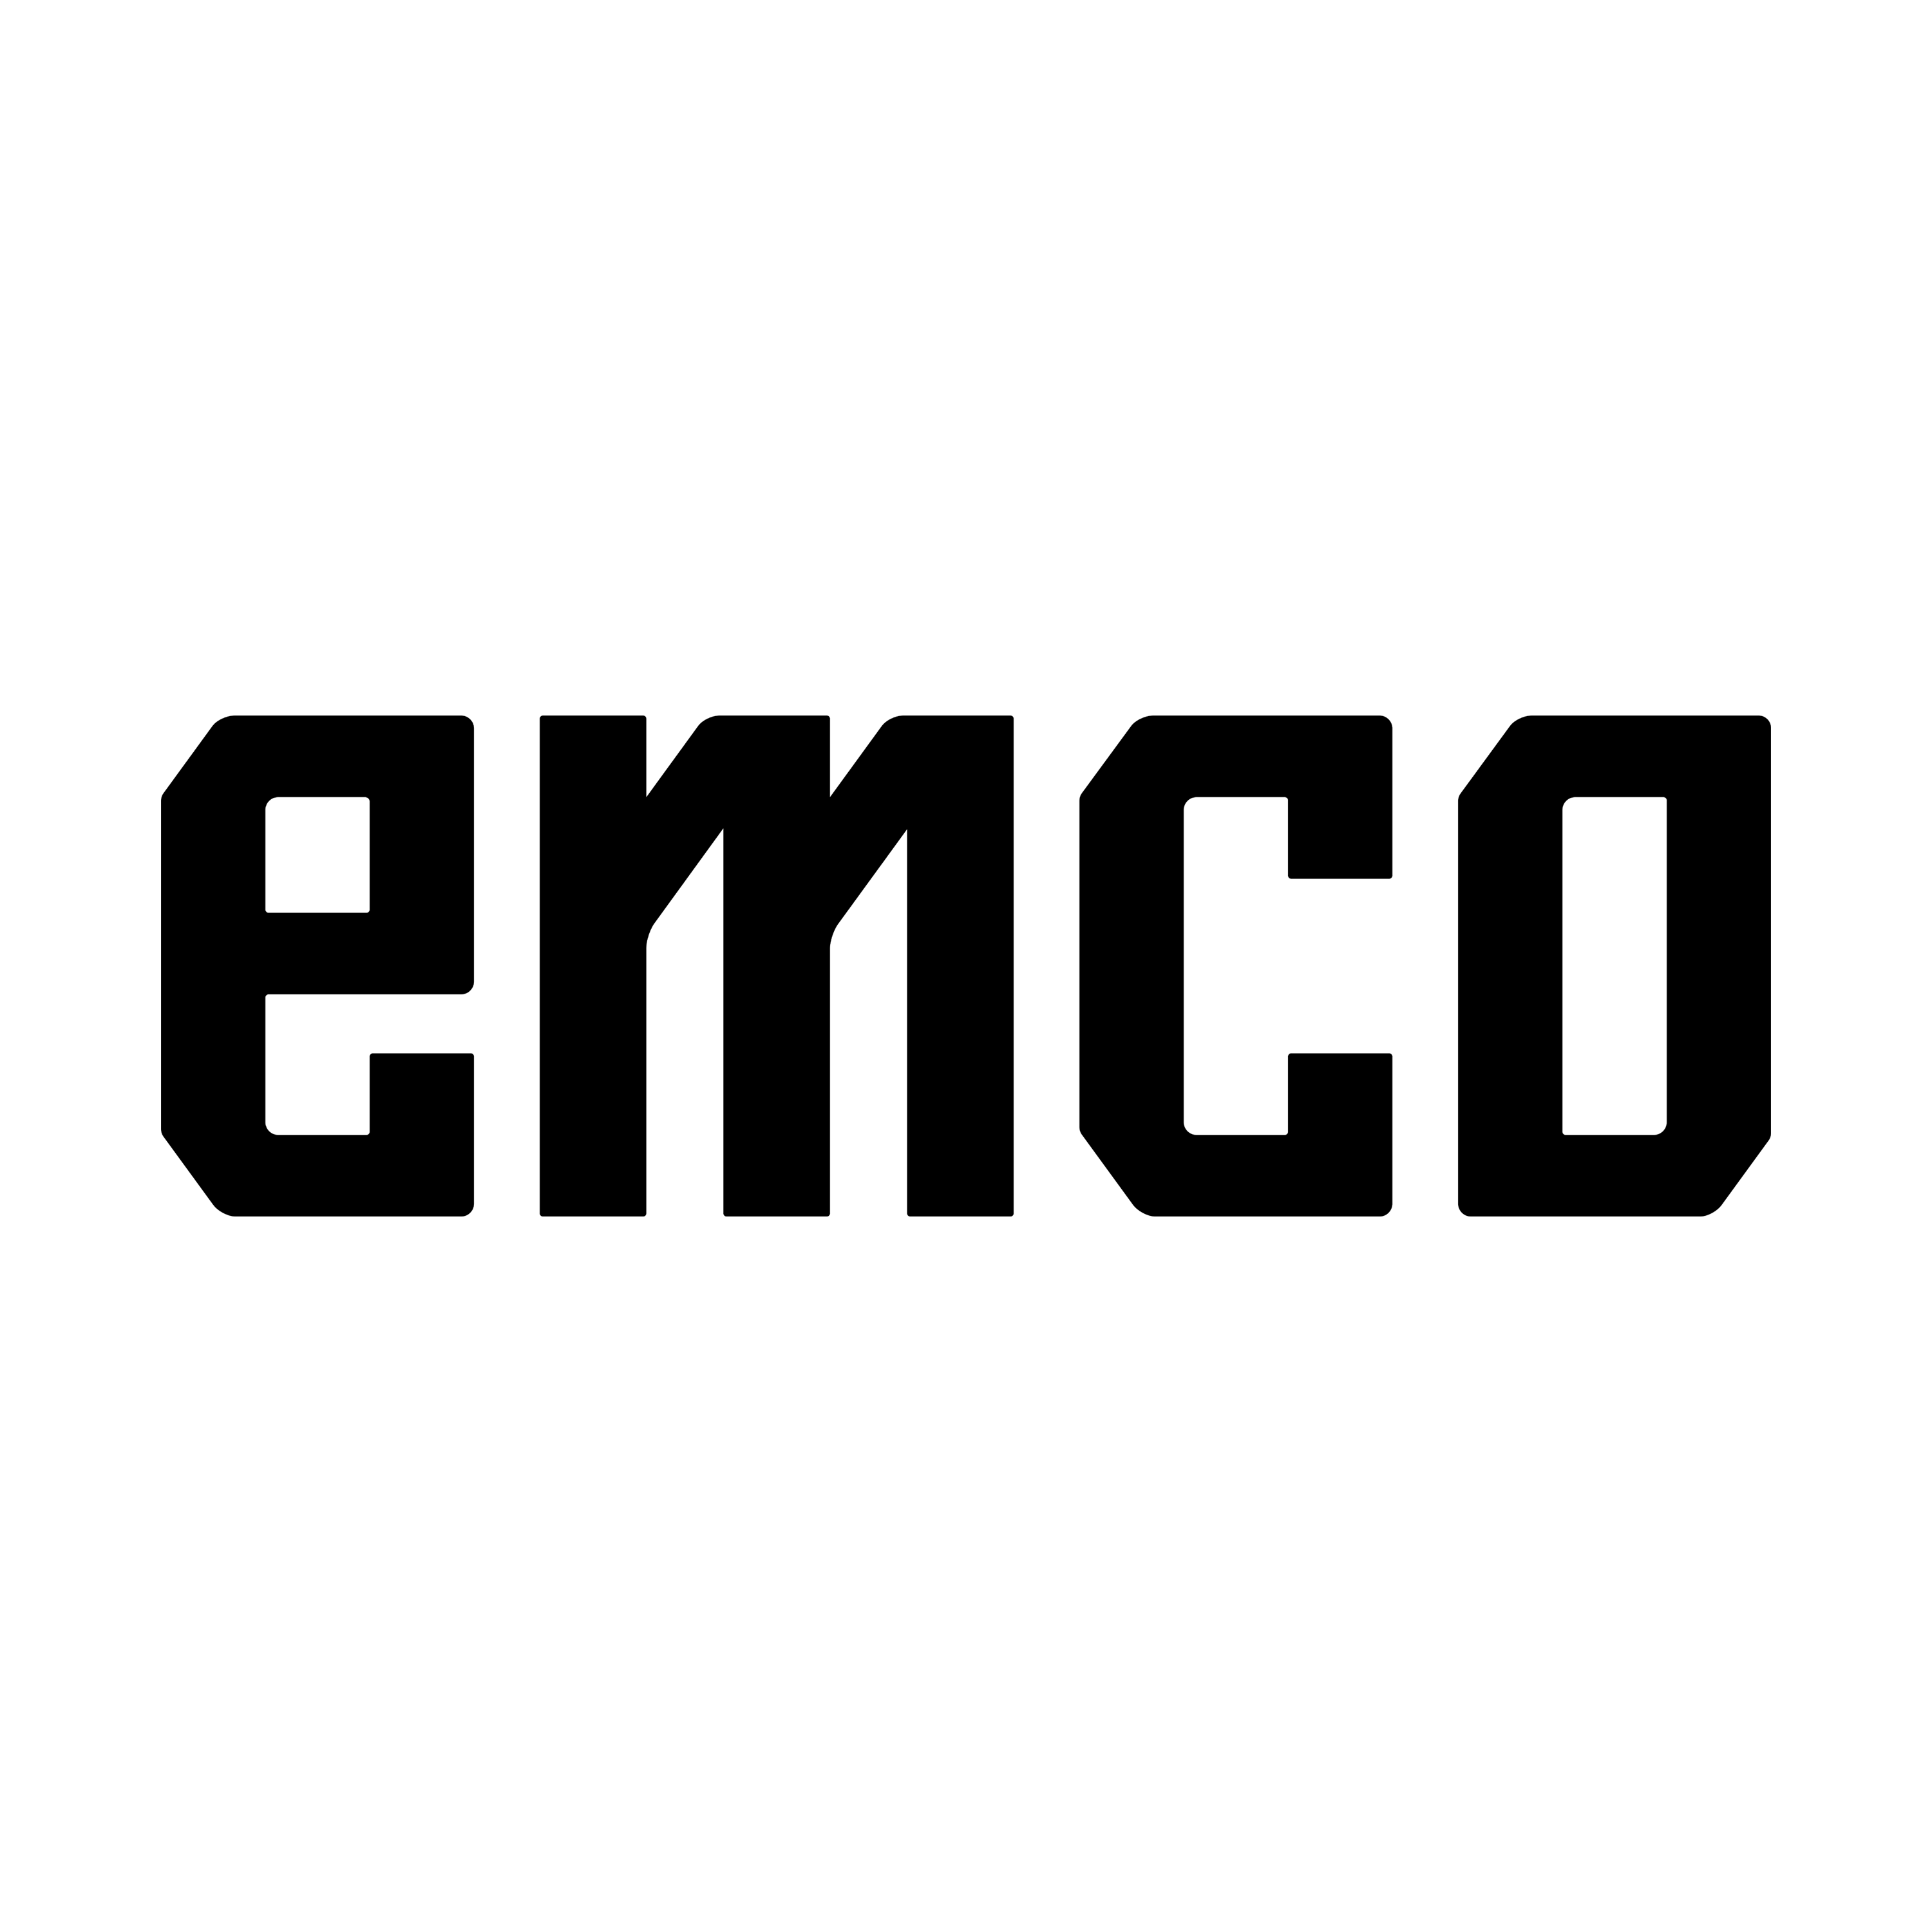 Emco Logo Transparent Photo